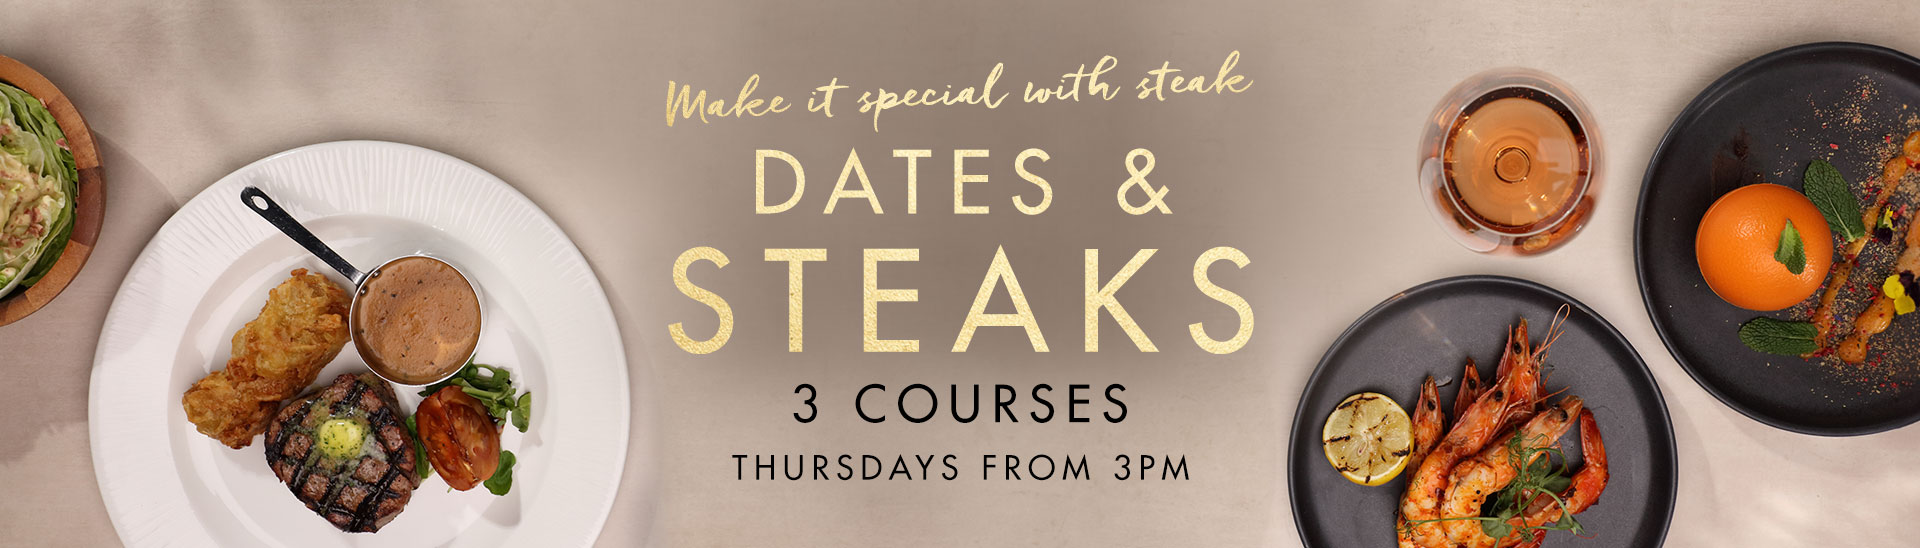 Dates & Steaks at Miller & Carter Sevenoaks